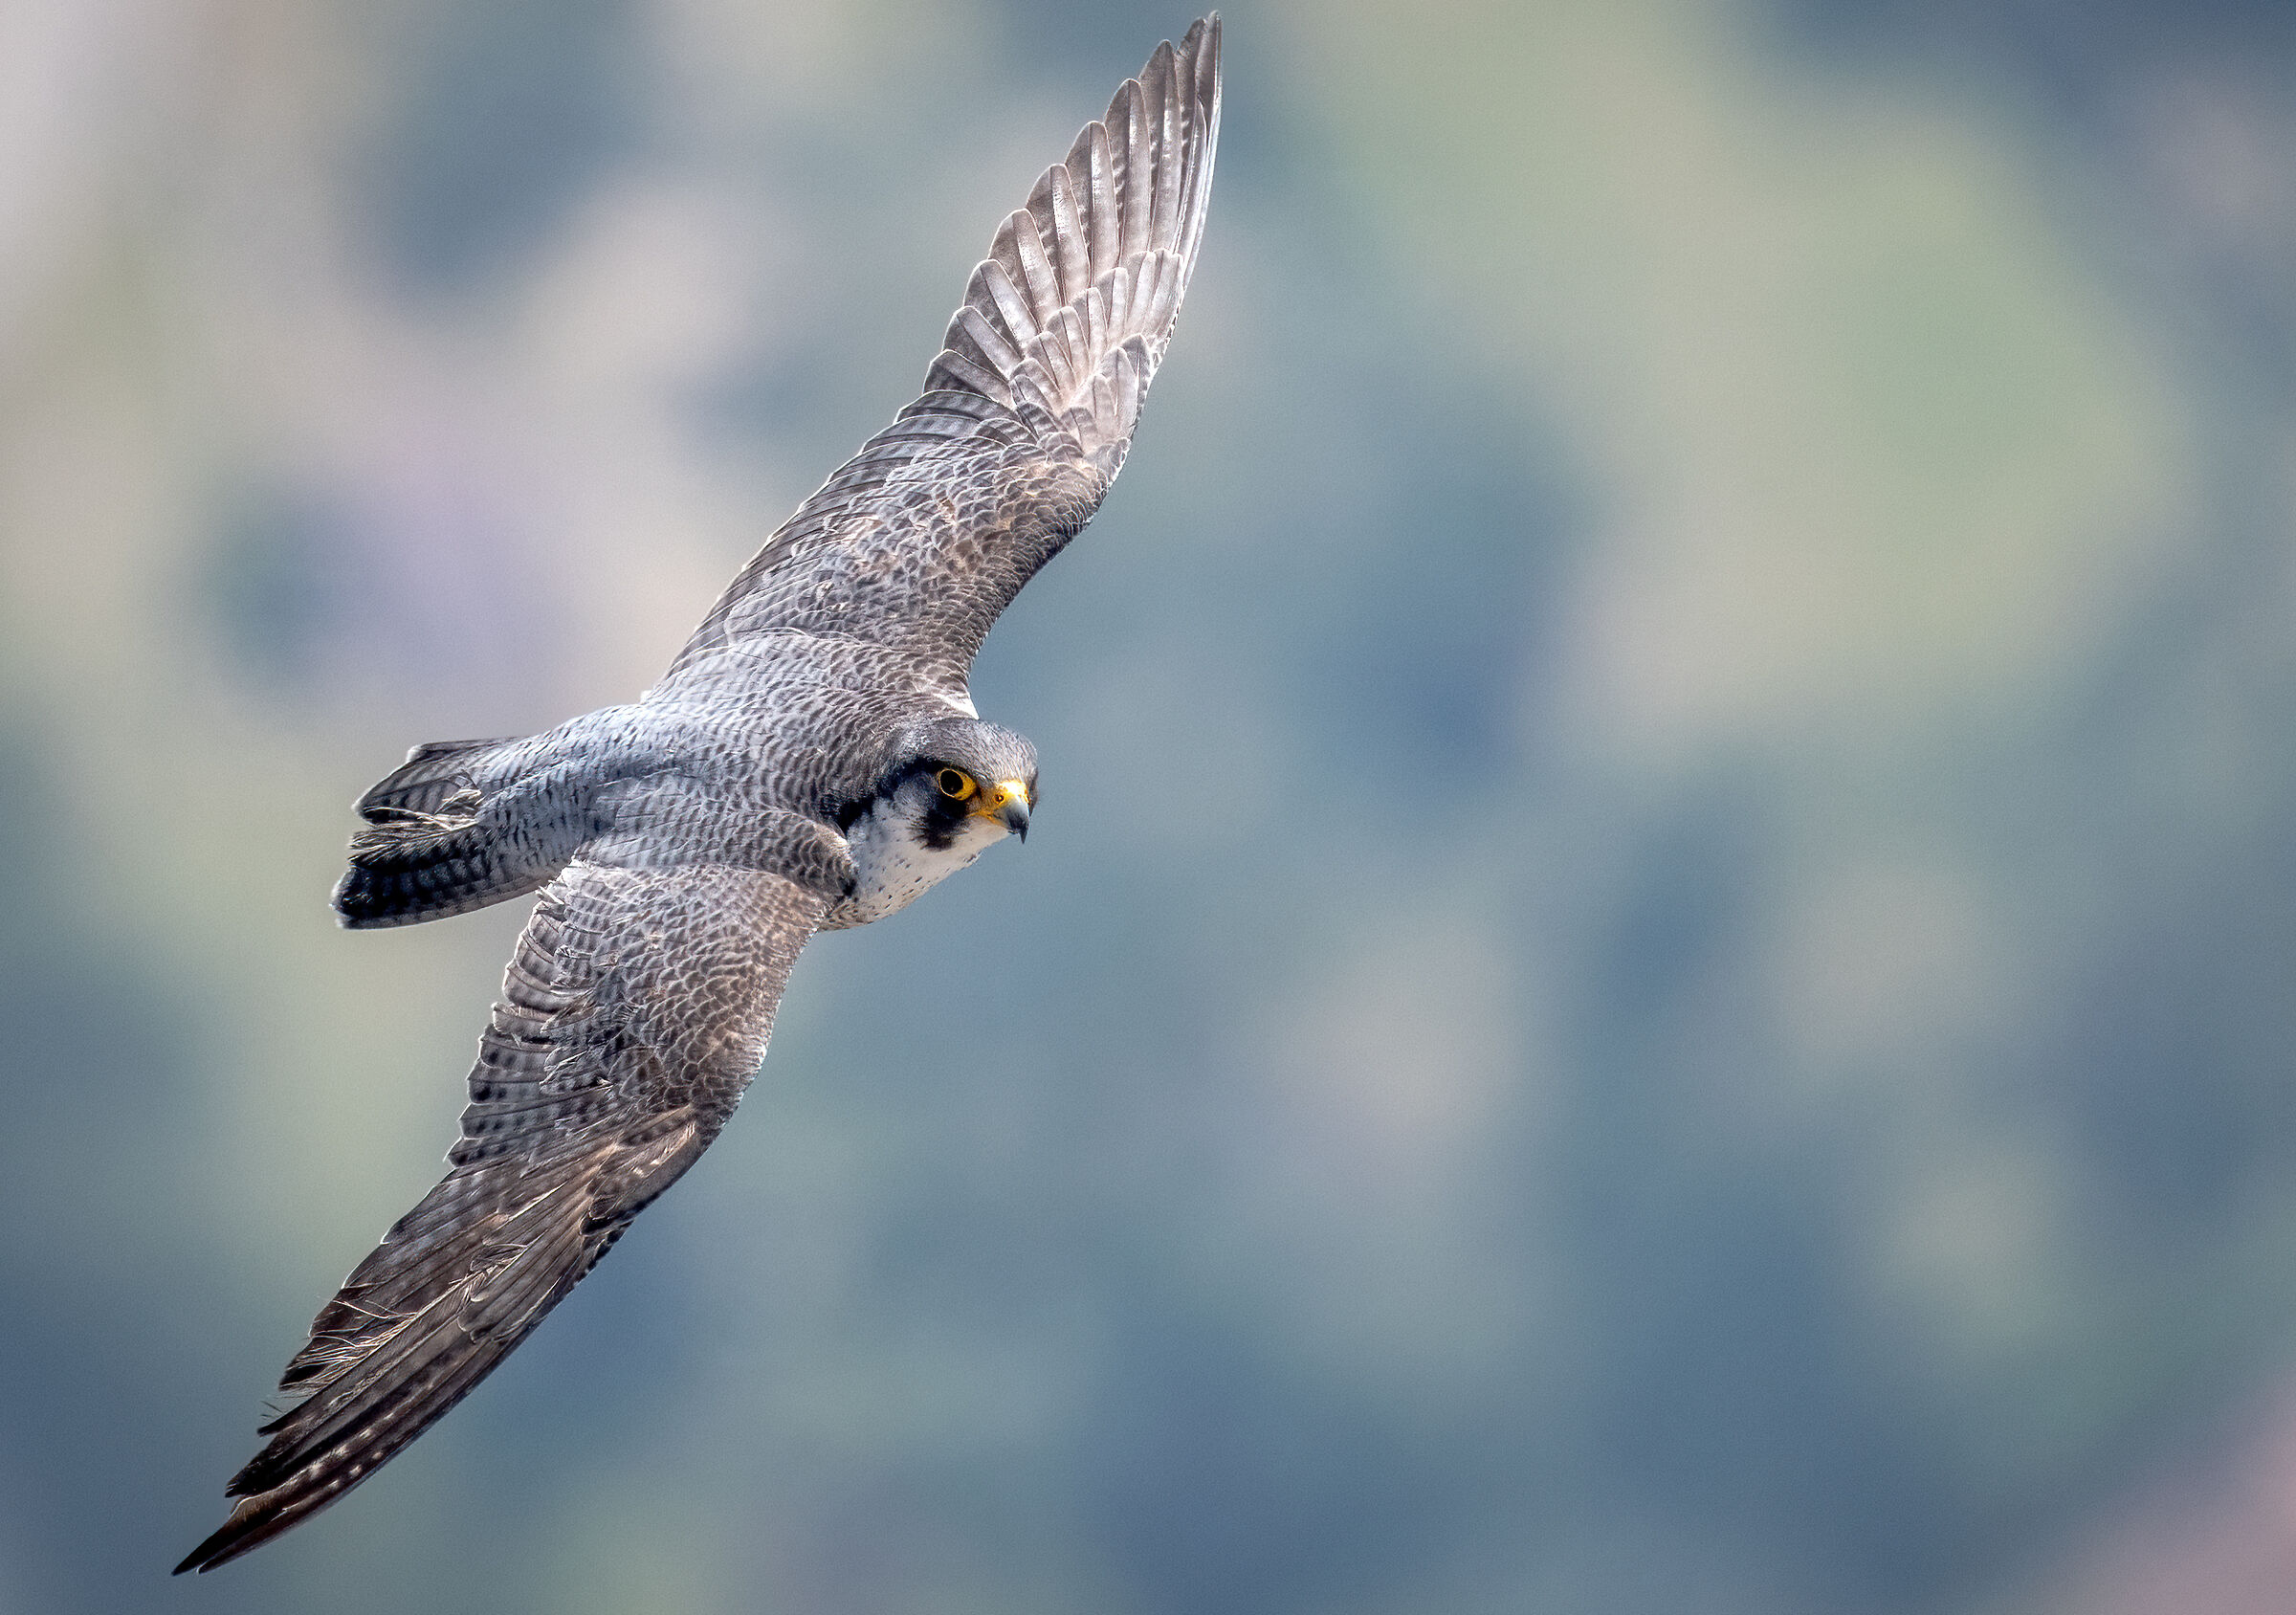 Peregrine falcon in flight...